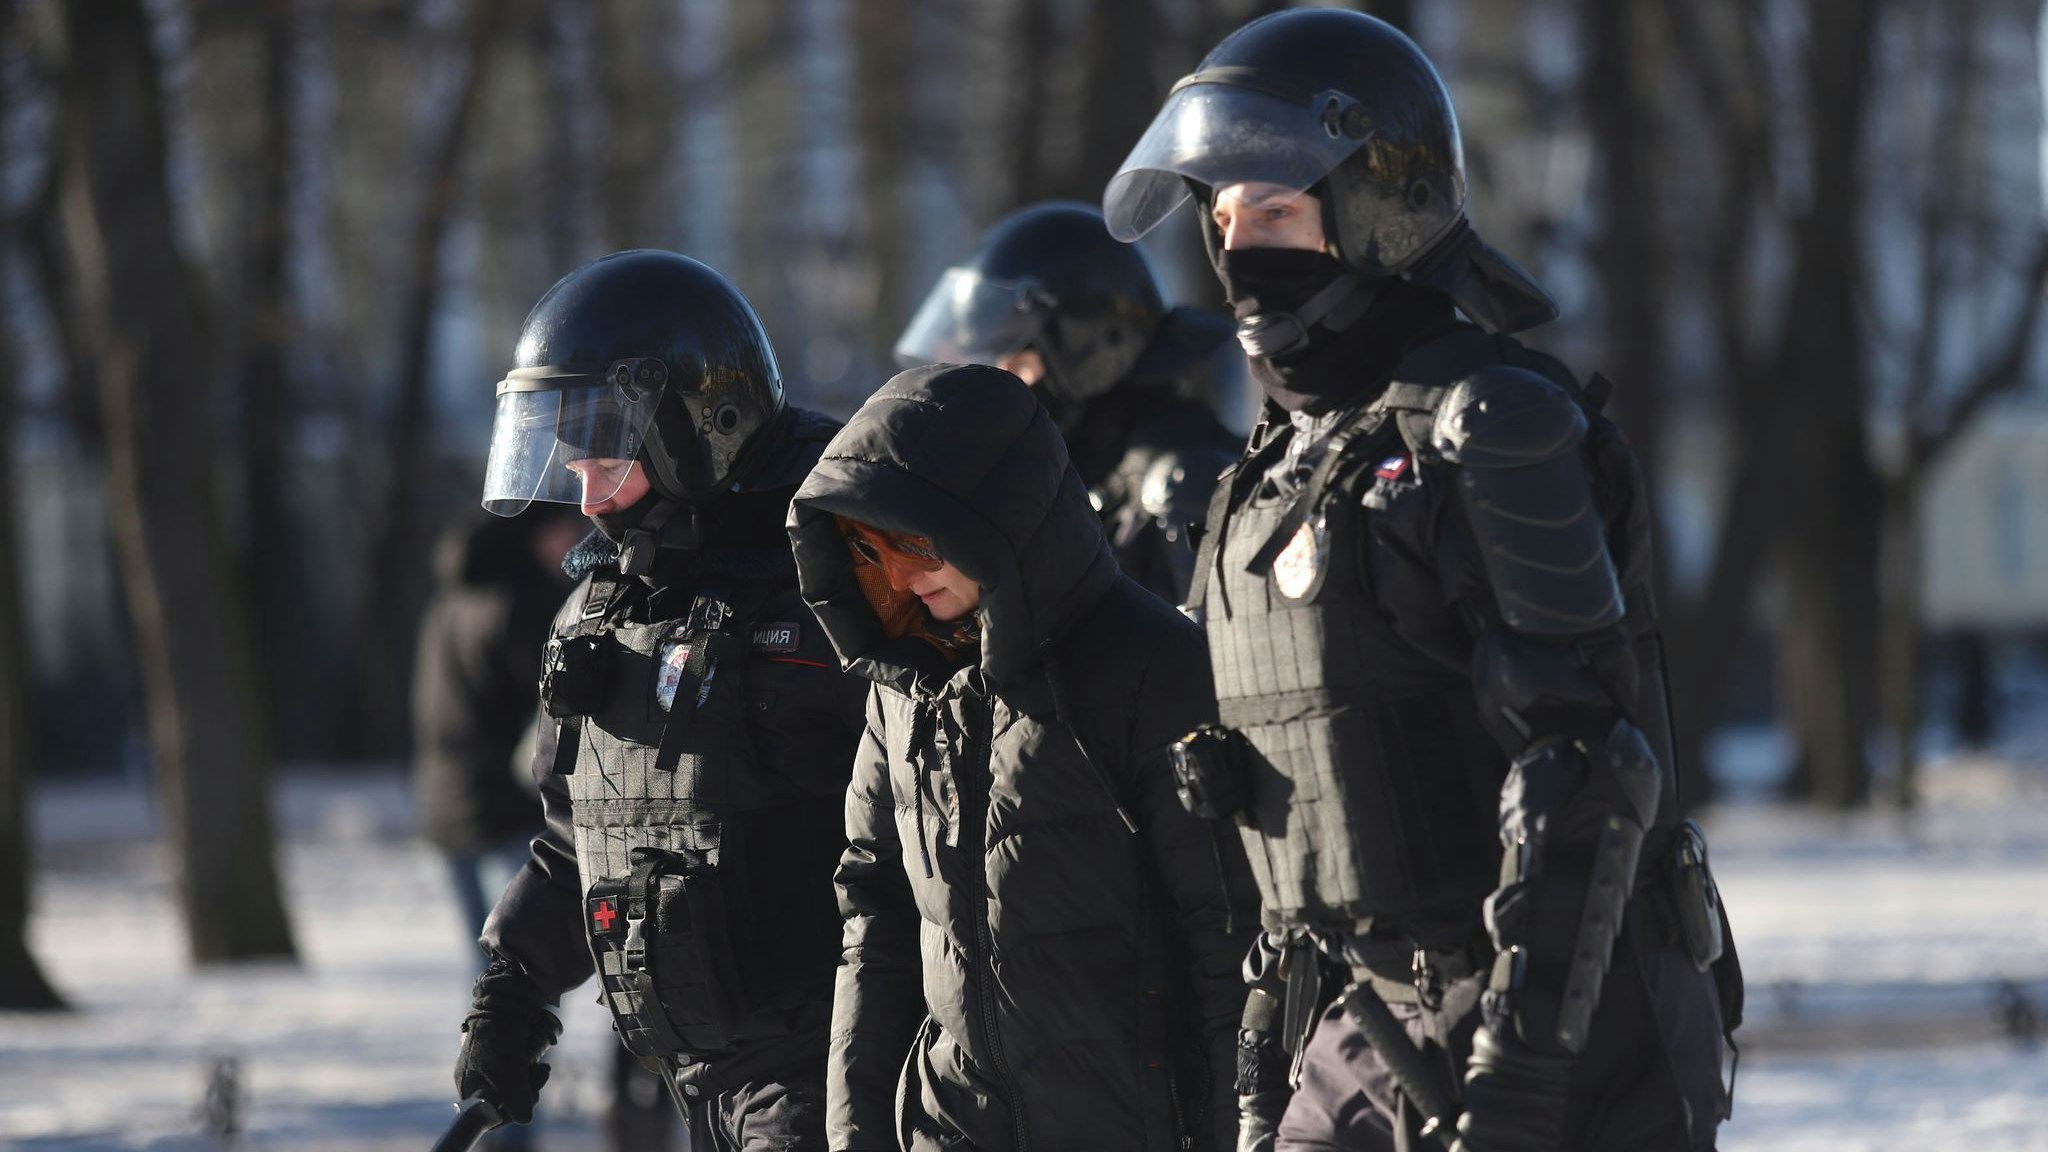 Polizeibeamte nehmen am Sonntag eine Demonstrantin in St. Petersburg fest. Foto: dpa